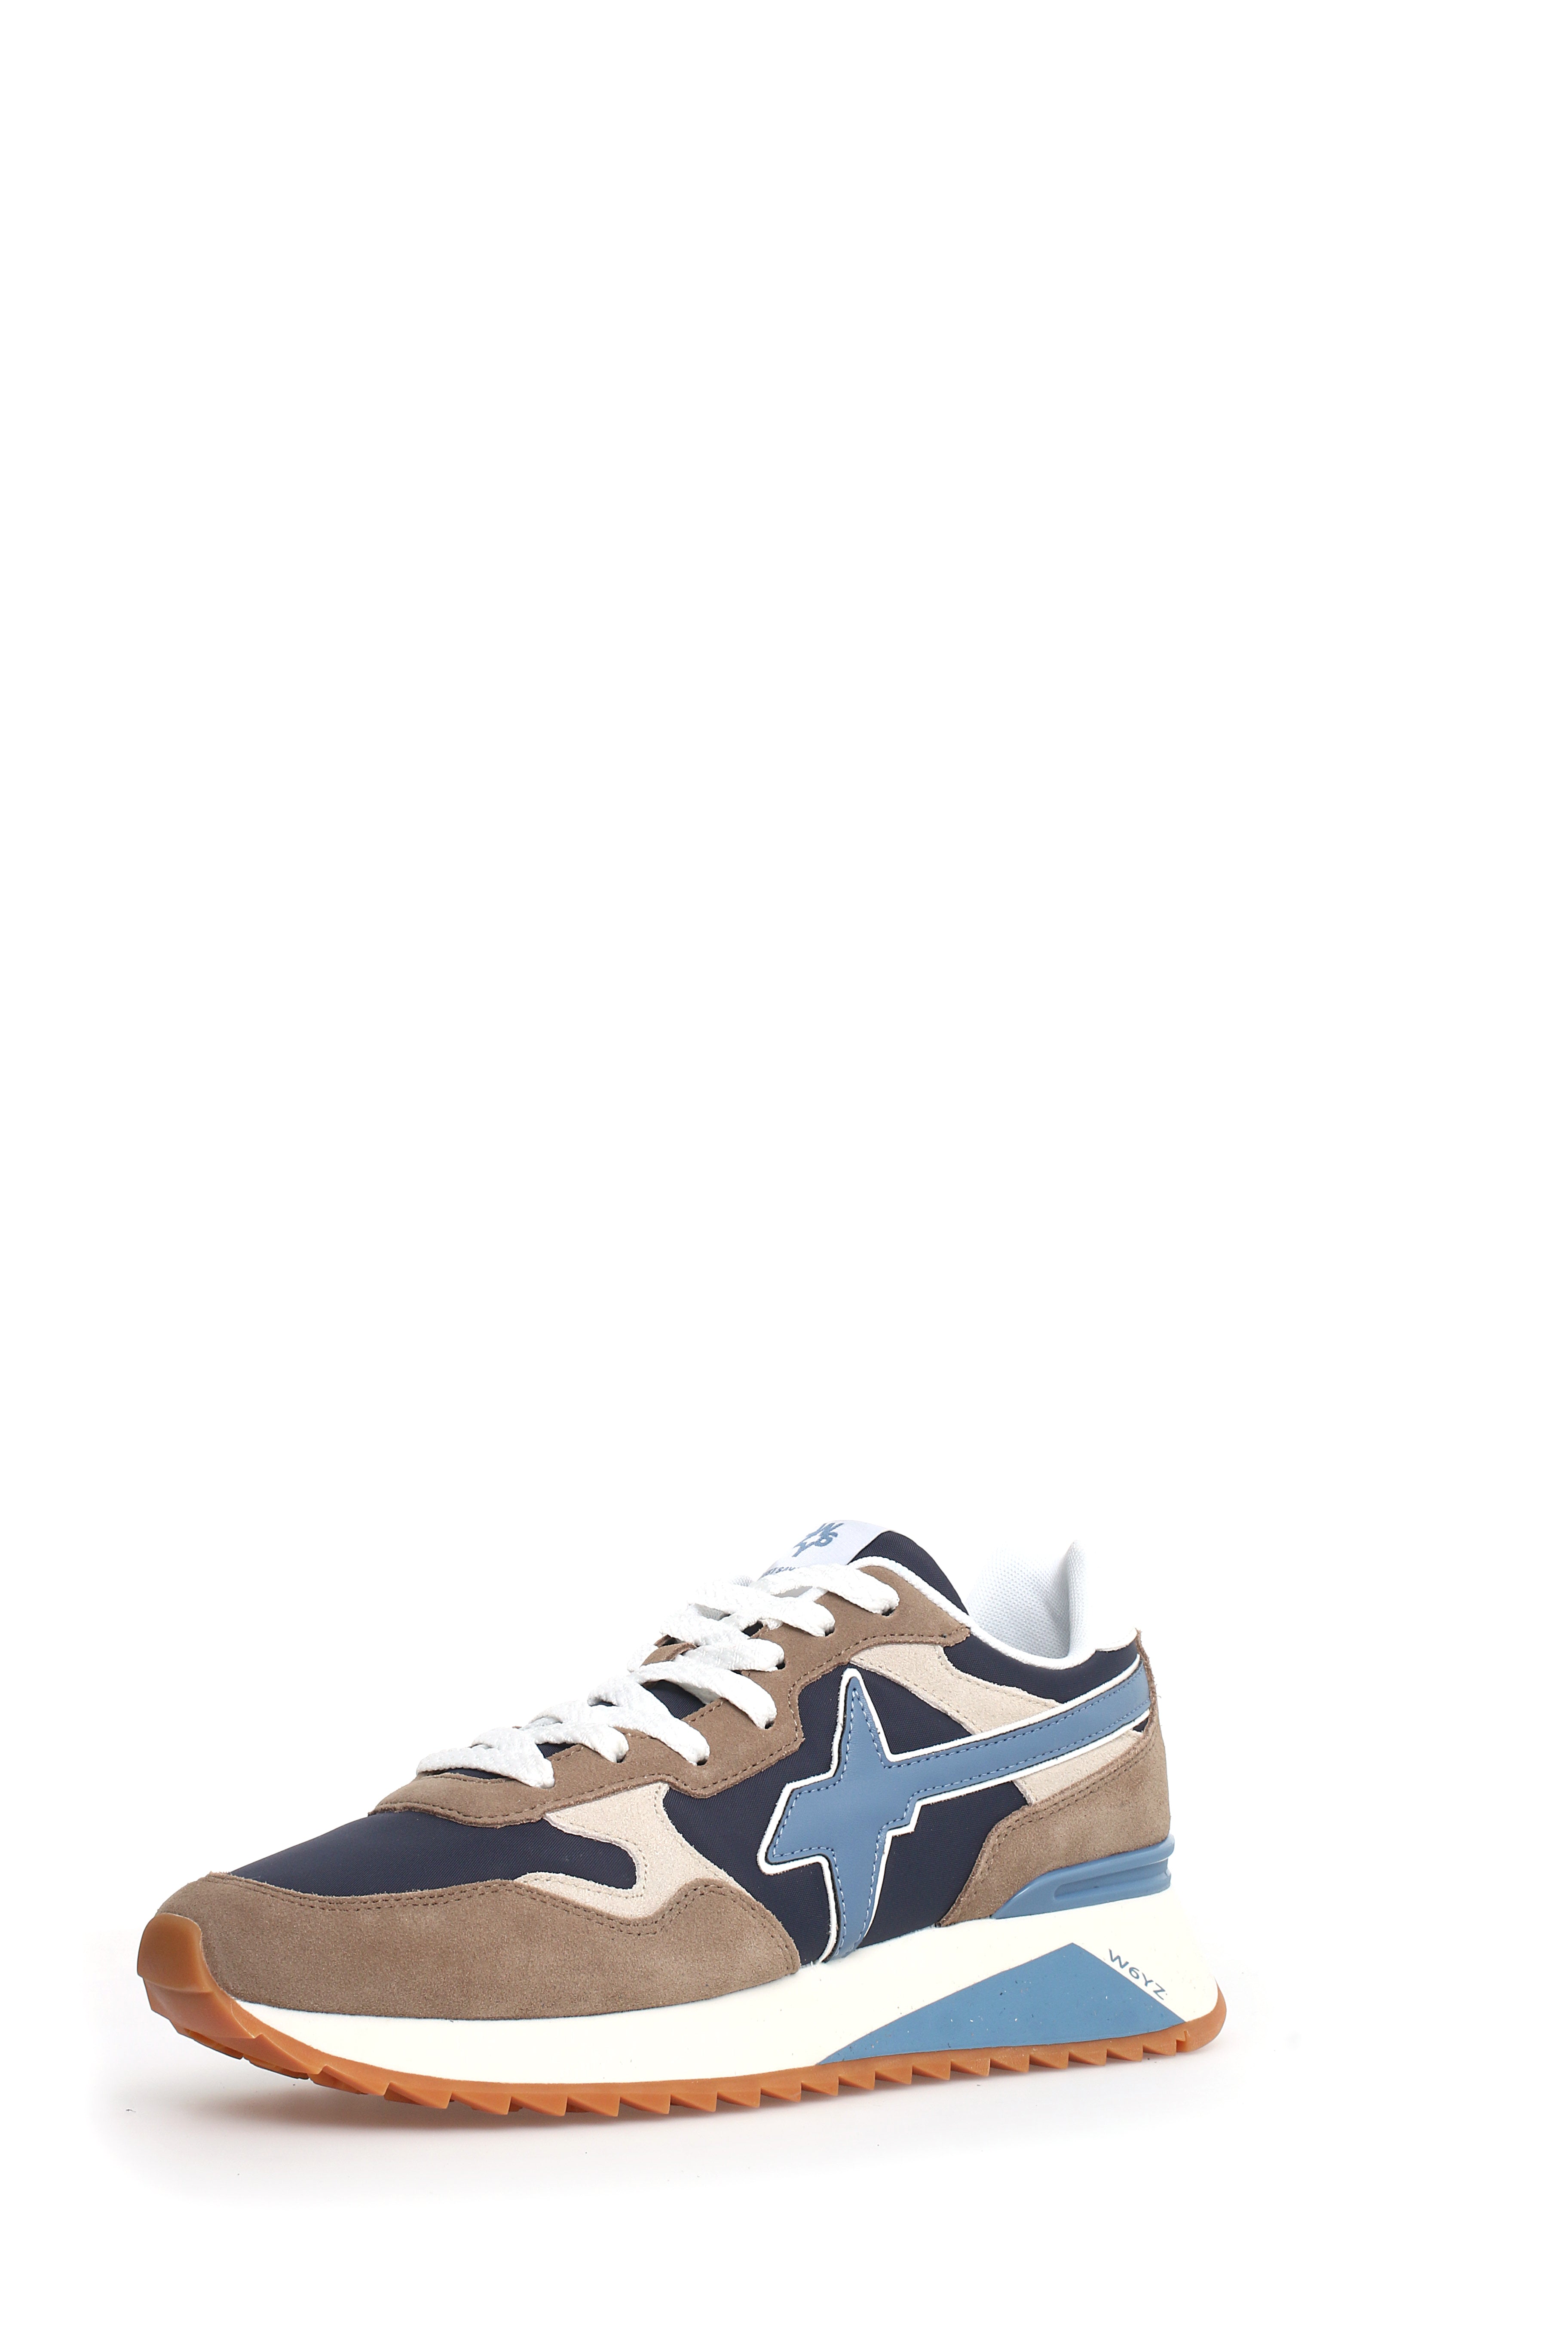 W6YZ-Sneaker Uomo Yak M-Taupe Navy